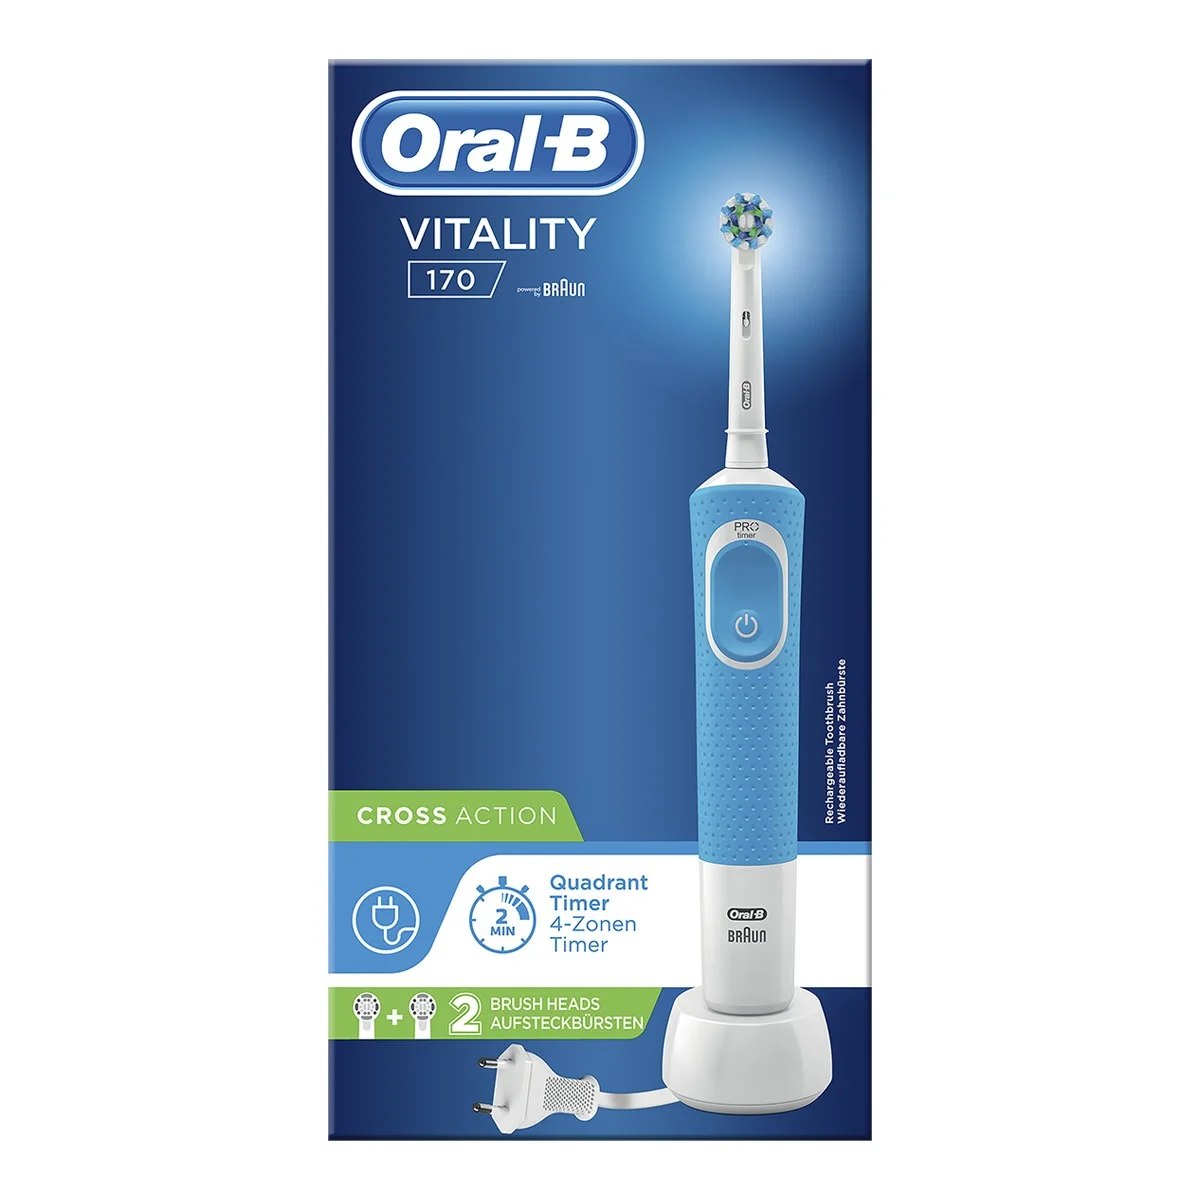 Oral-B Vitality 170 Spazzolino Elettrico